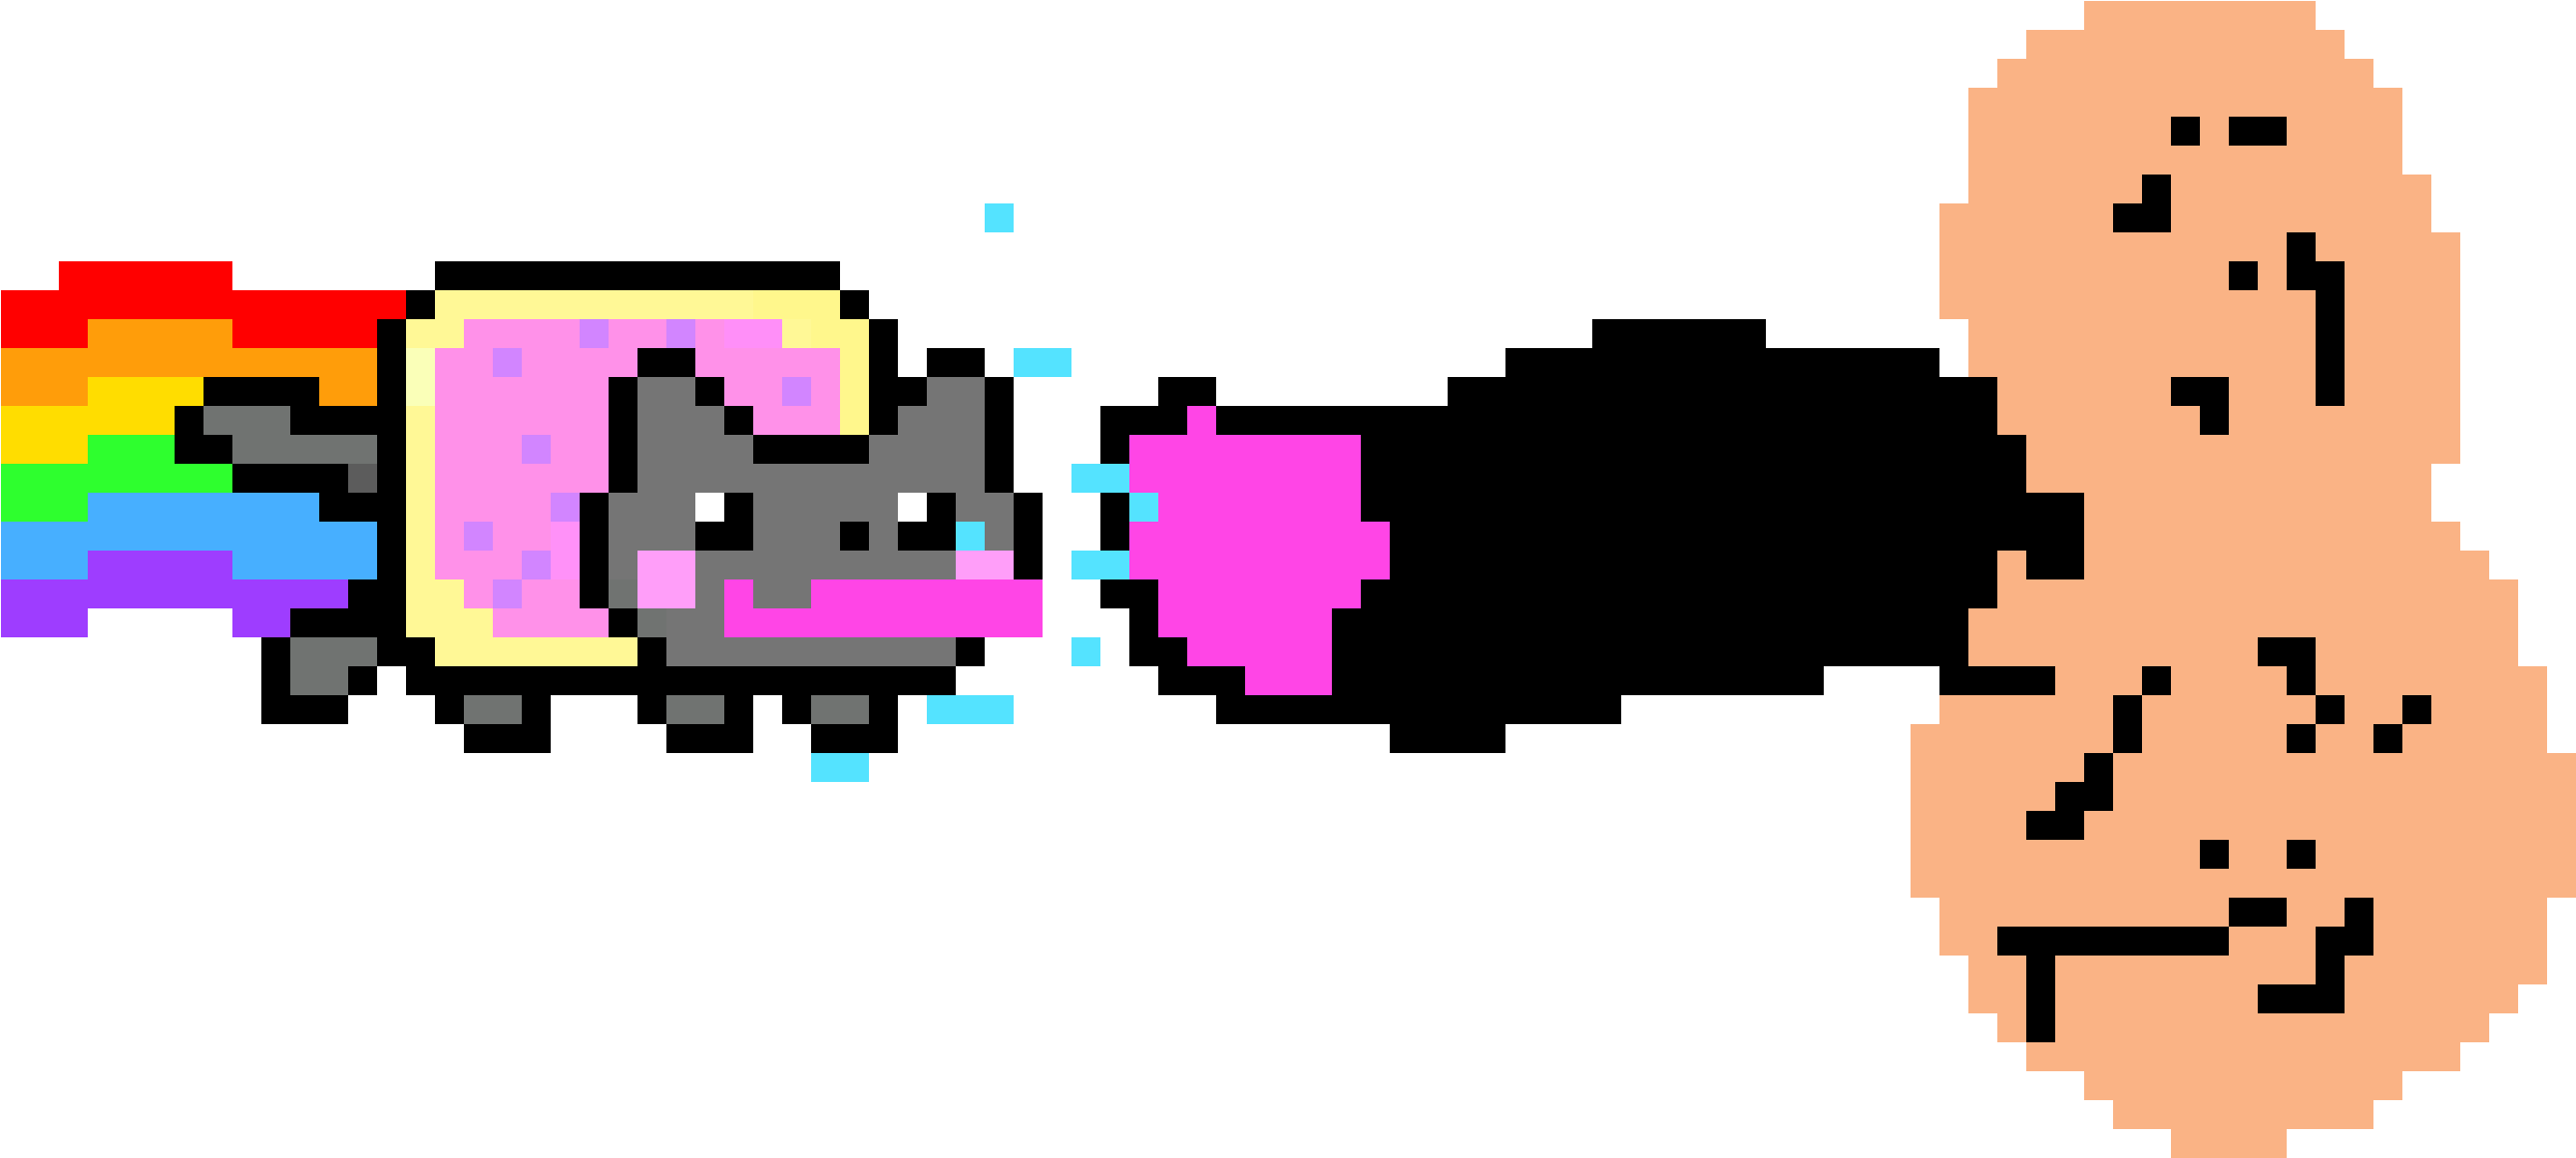 Nyan Cat Having Fun - Nyan Cat Pixel Art Clipart (2940x1500), Png Download